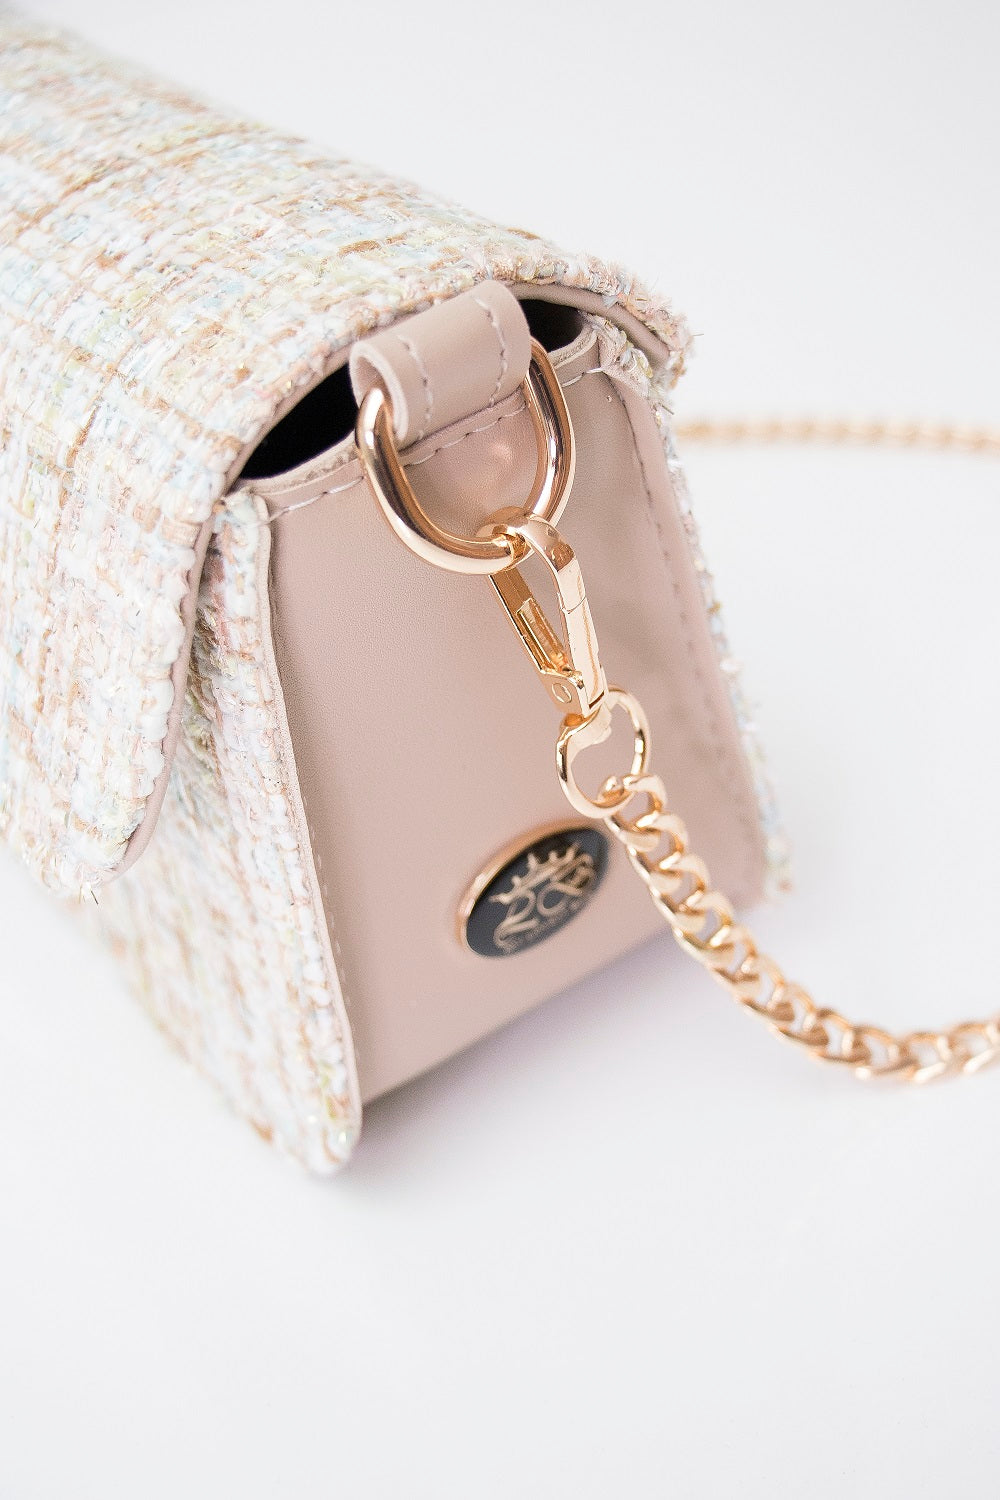 Luxury handbag for diva's women - BAG - PIA - BEIGE GOLD